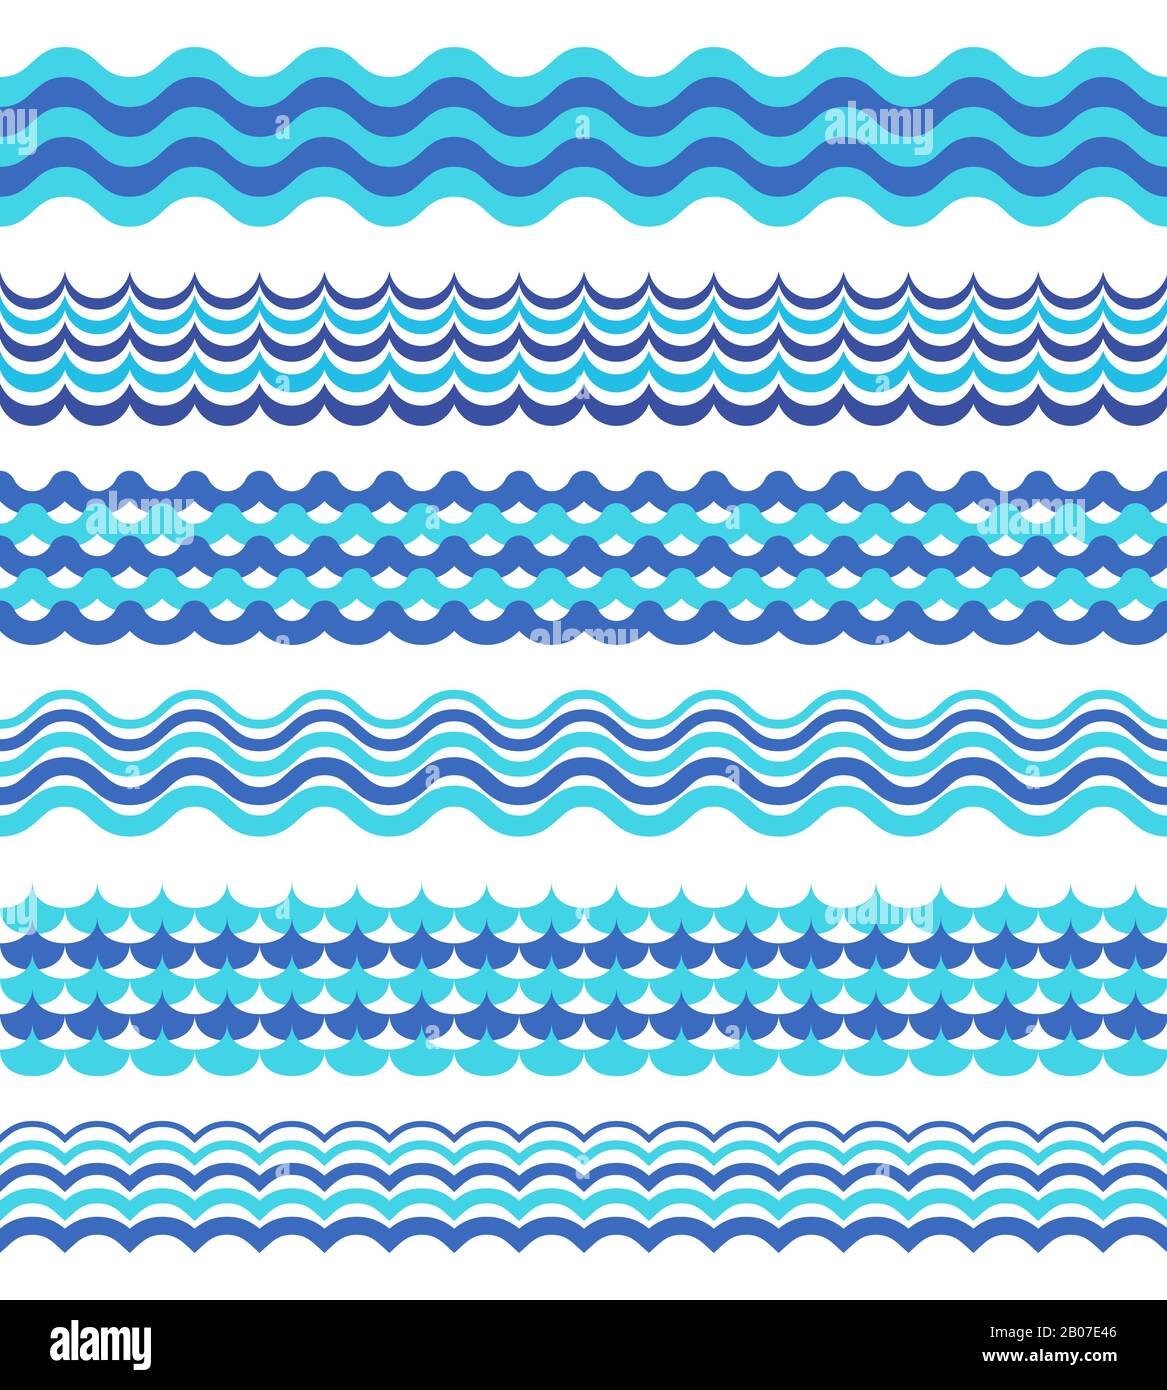 Der Satz von Meereswellen grenzt isoliert an Weiß. Dekorationsdesign mit Wellenwasser, Vektorgrafiken Stock Vektor